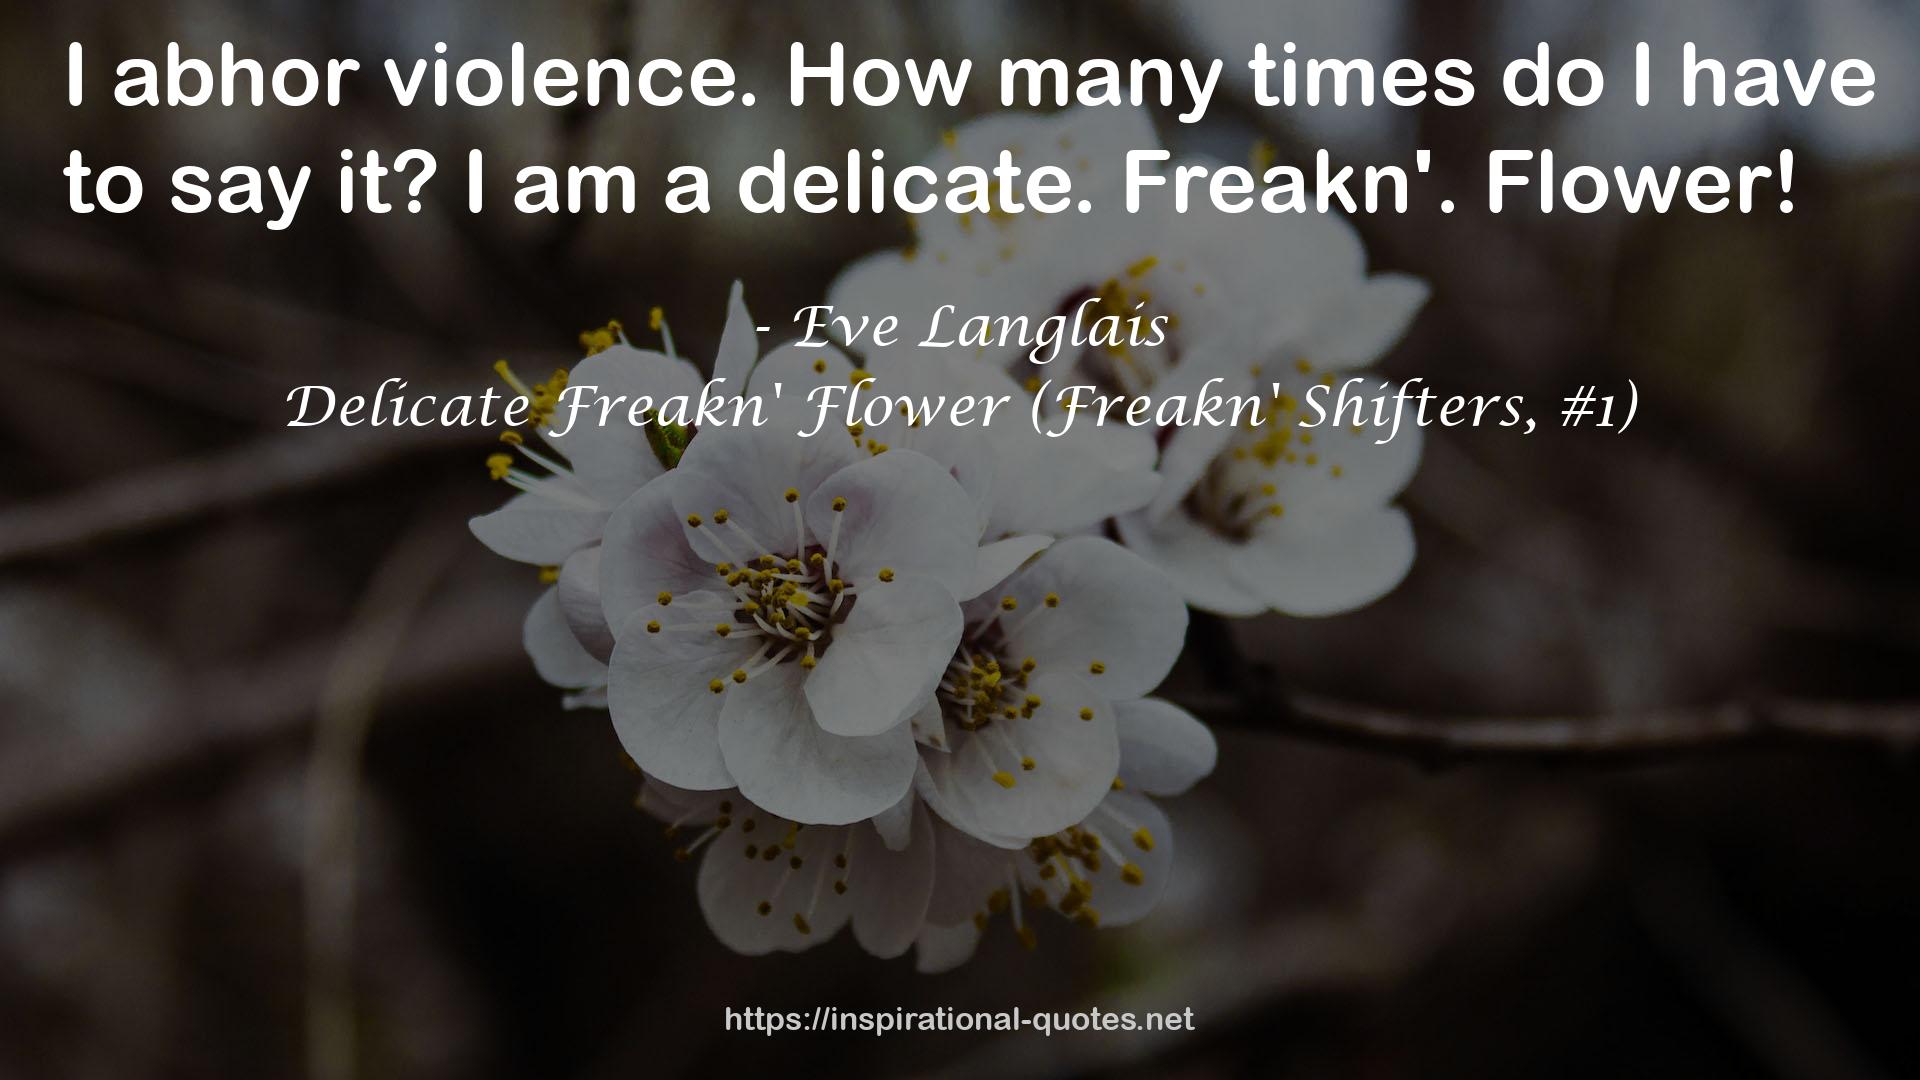 Delicate Freakn' Flower (Freakn' Shifters, #1) QUOTES